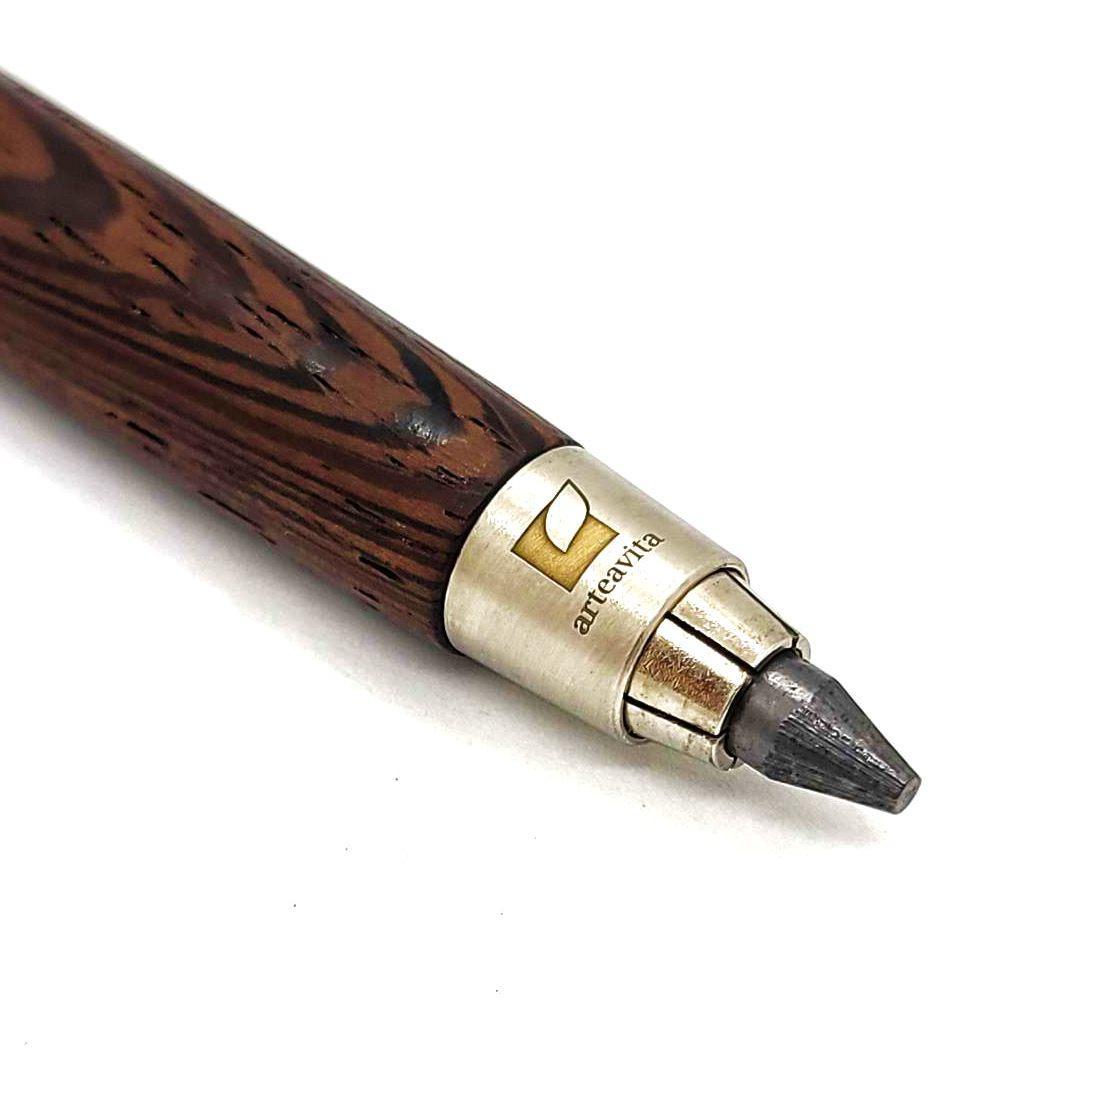 Turned Wood Pen - Wenge